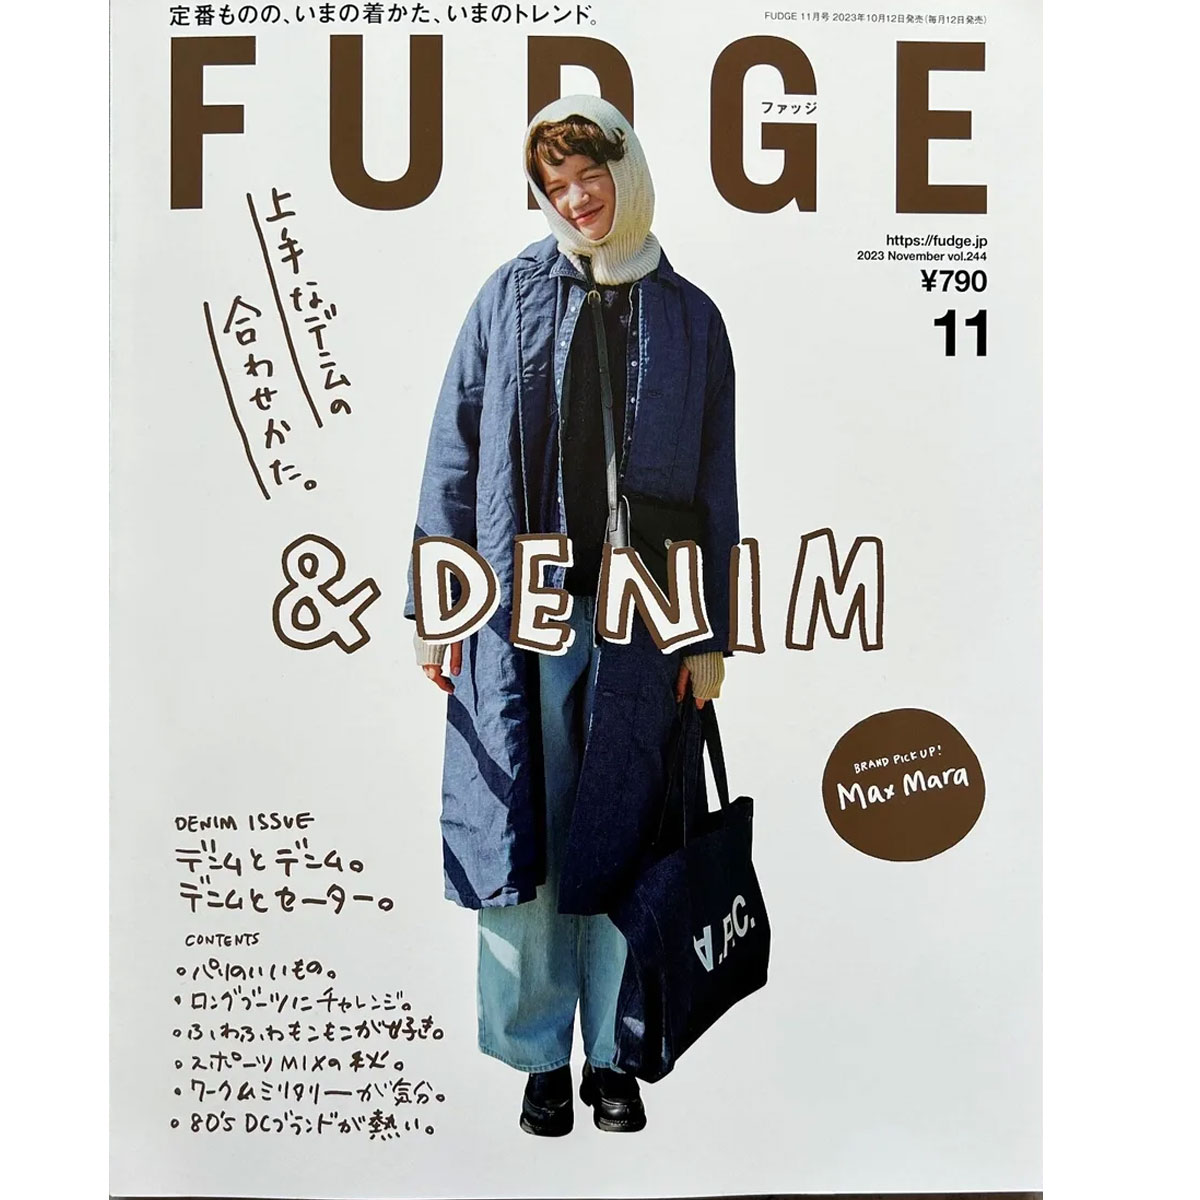 FUDGE Magazine Denim Issue